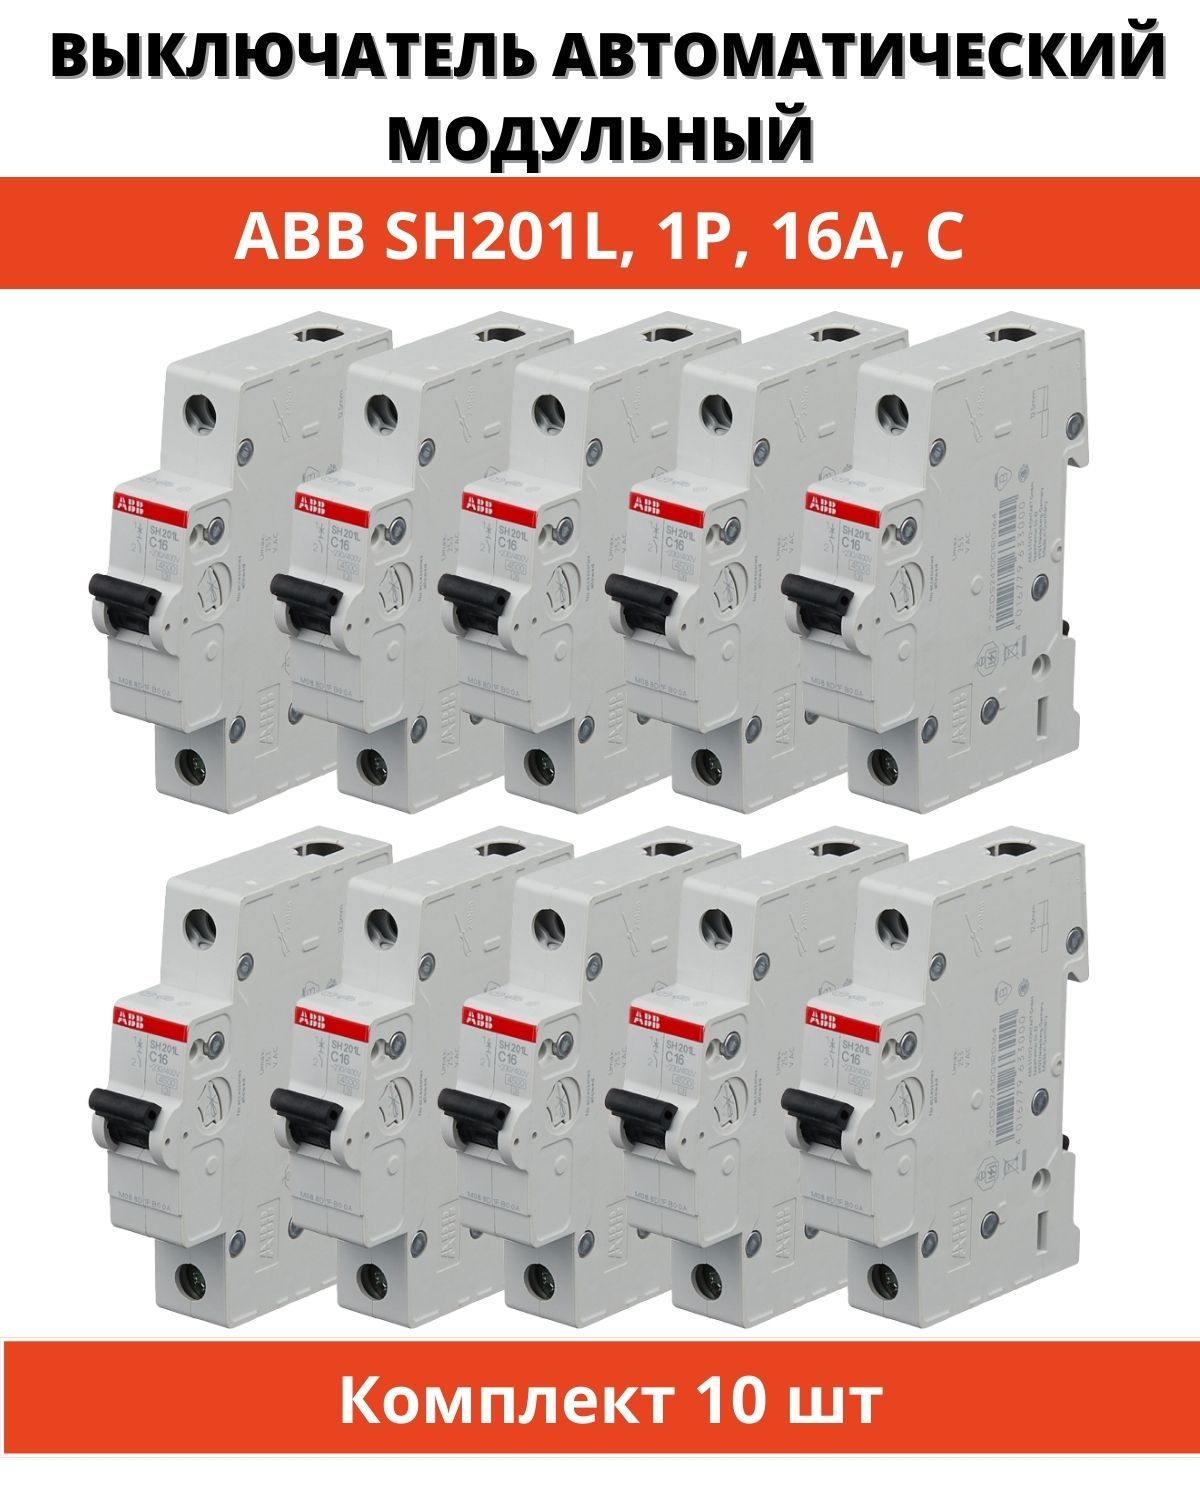 ABB 16a sh201l c16 1p. ABB 16a sh201l ABB c16 1p. ABB s201 c16. Разновидность автоматов ABB.